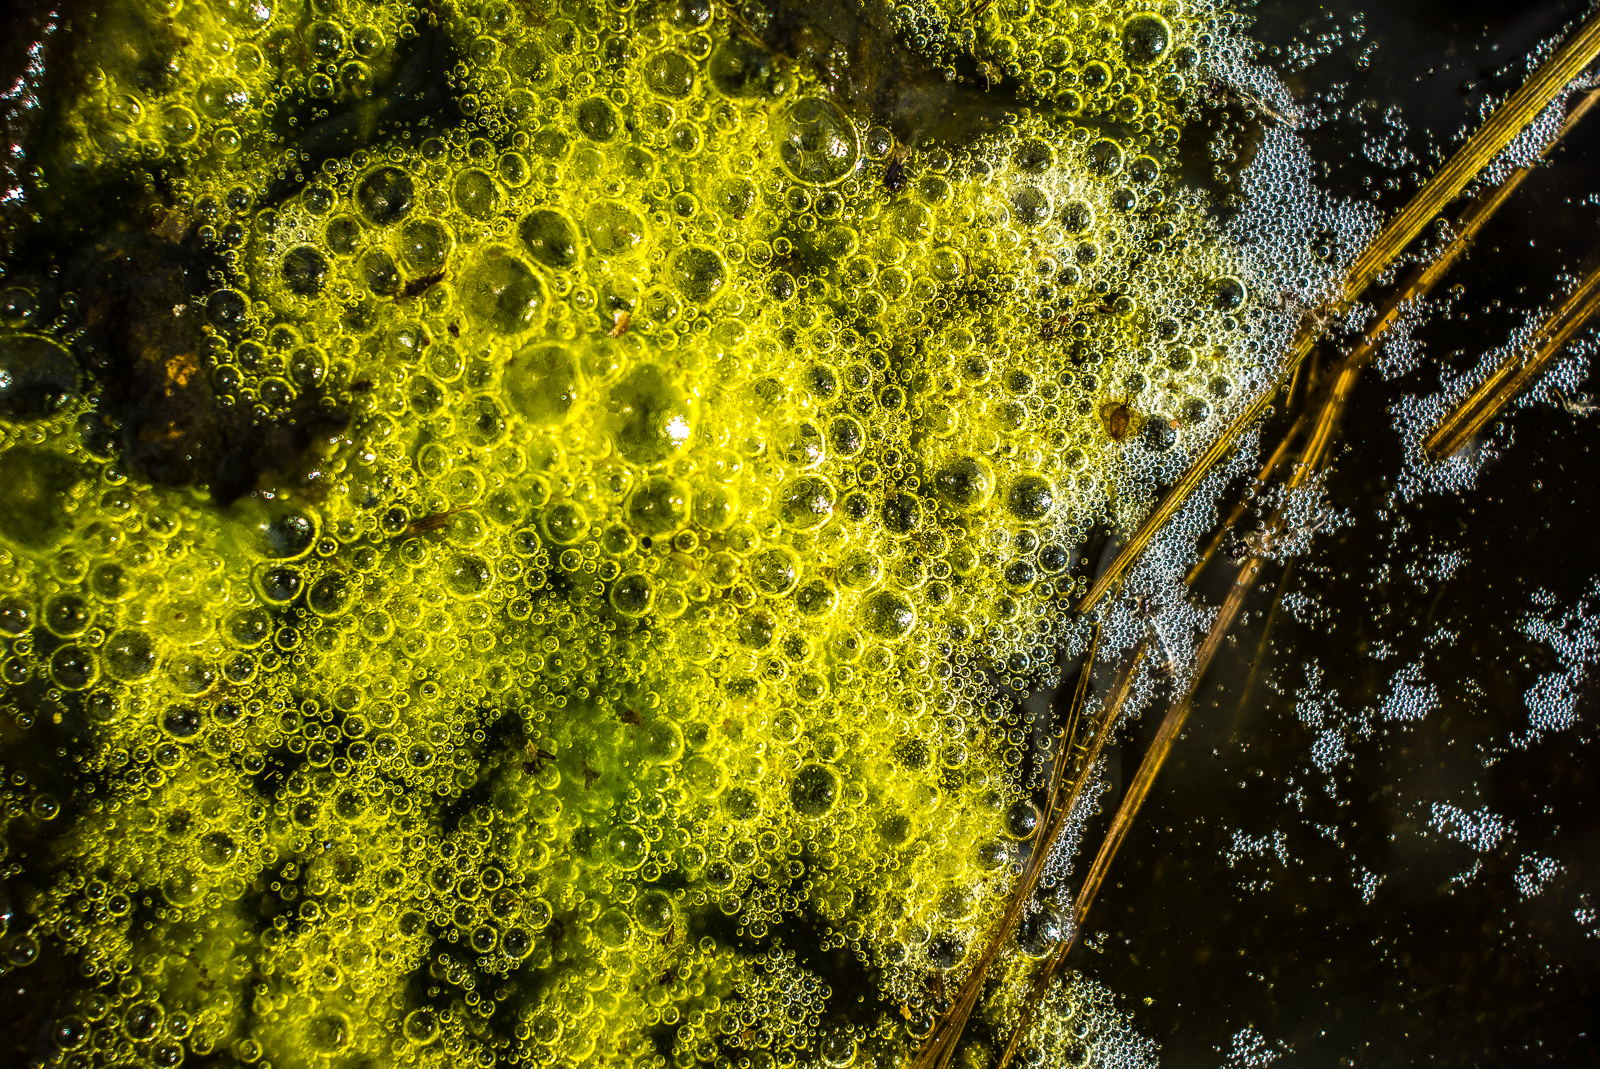 Leuchtend grüne, schaumige Masse, möglicherweise Froschlaich?, auf dunklem Moorwasser